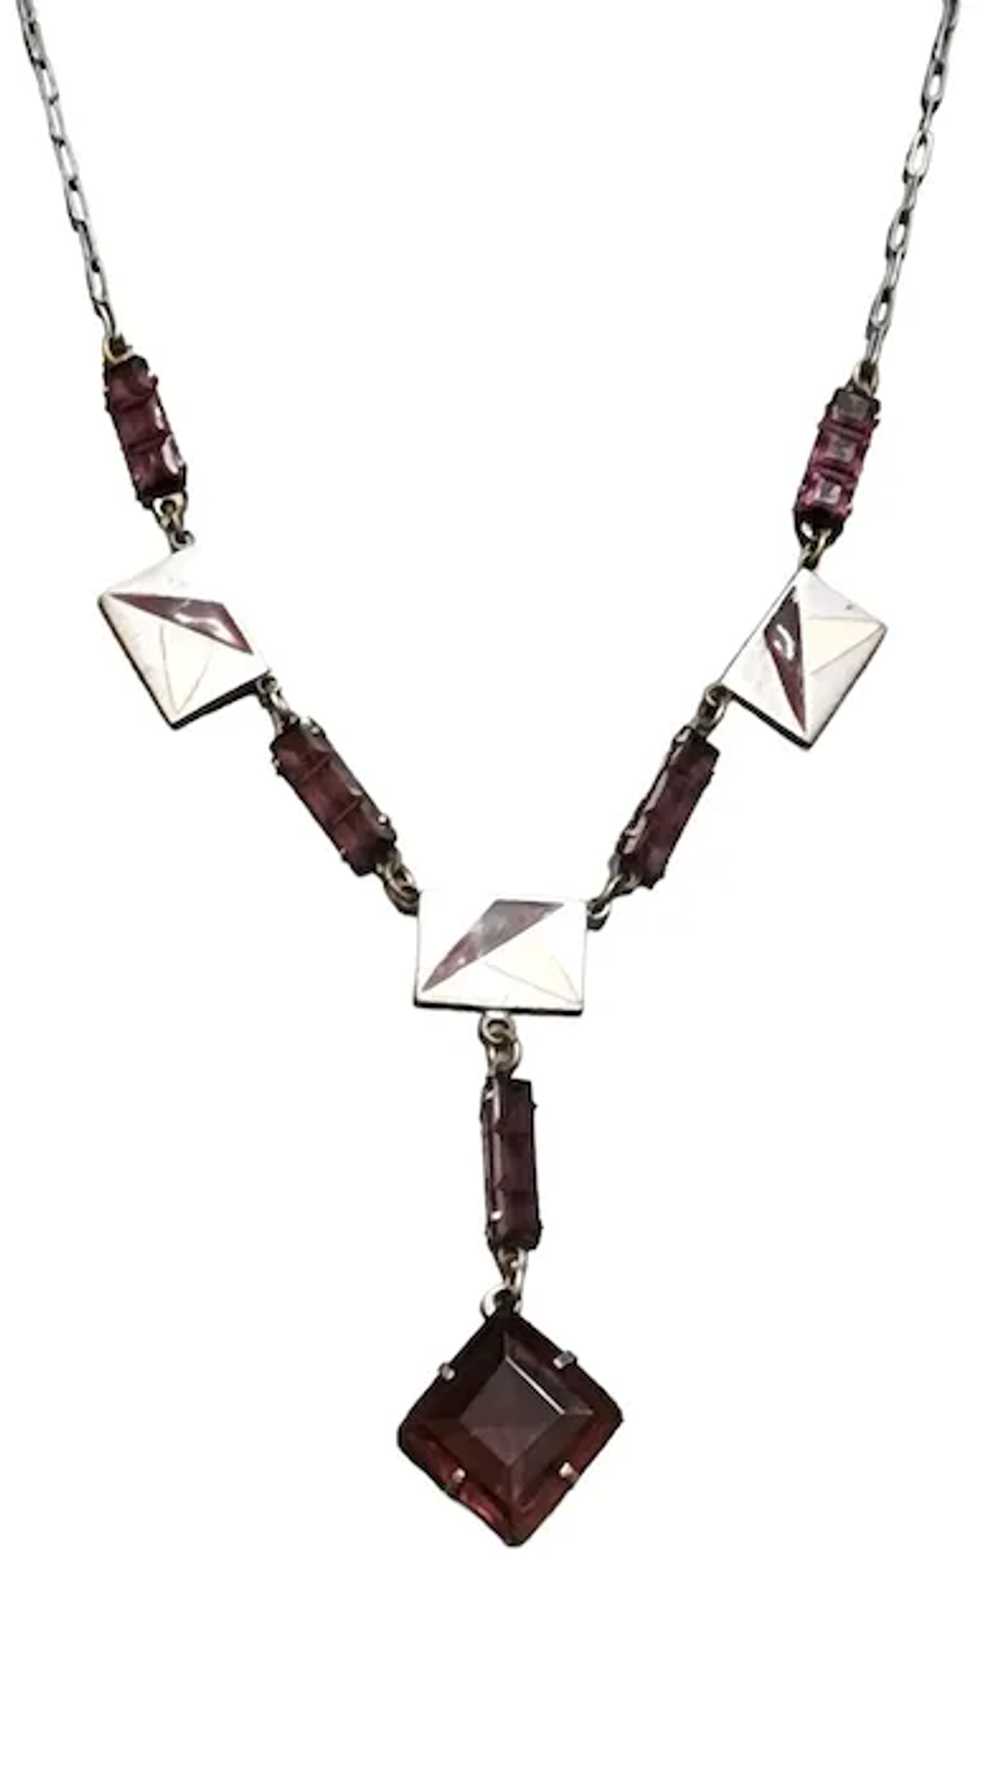 Vintage Art Deco Enamel & Glass Necklace (A2858) - image 2